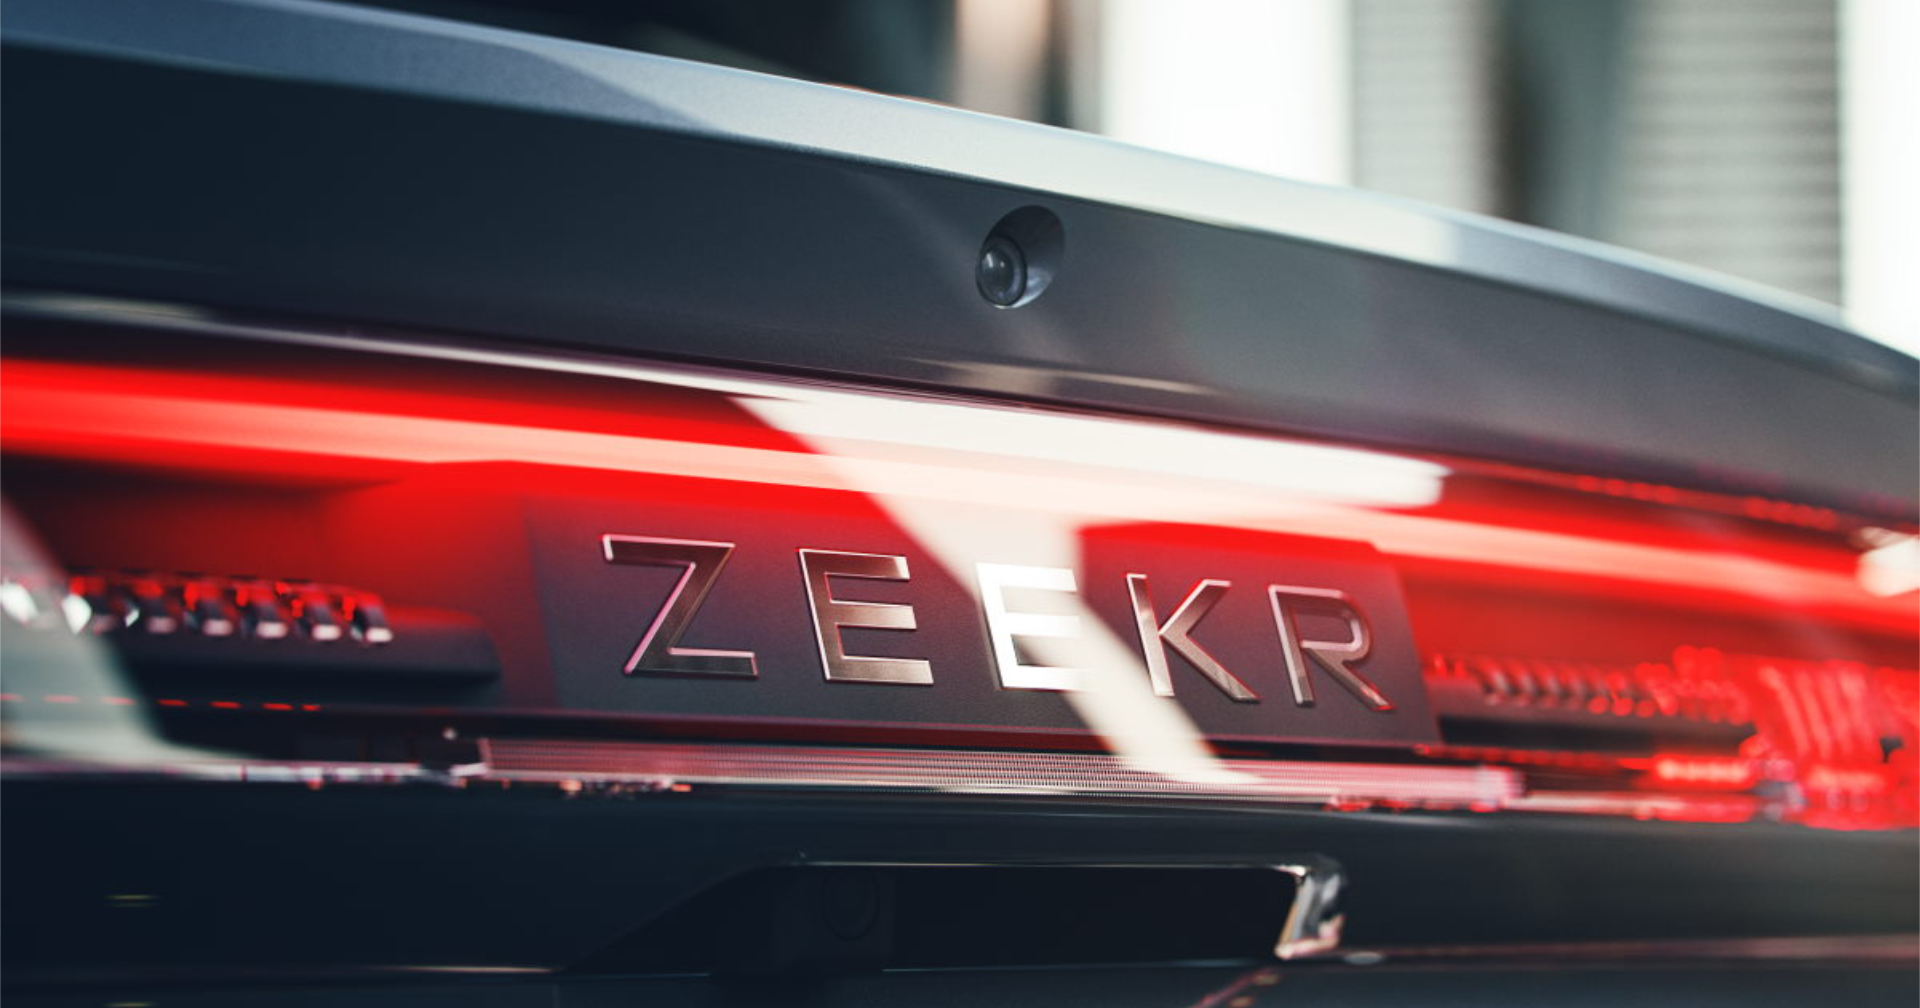 Zeekr เตรียมใช้ Giga Press ช่วยลดต้นทุนการผลิตรถยนต์ไฟฟ้า